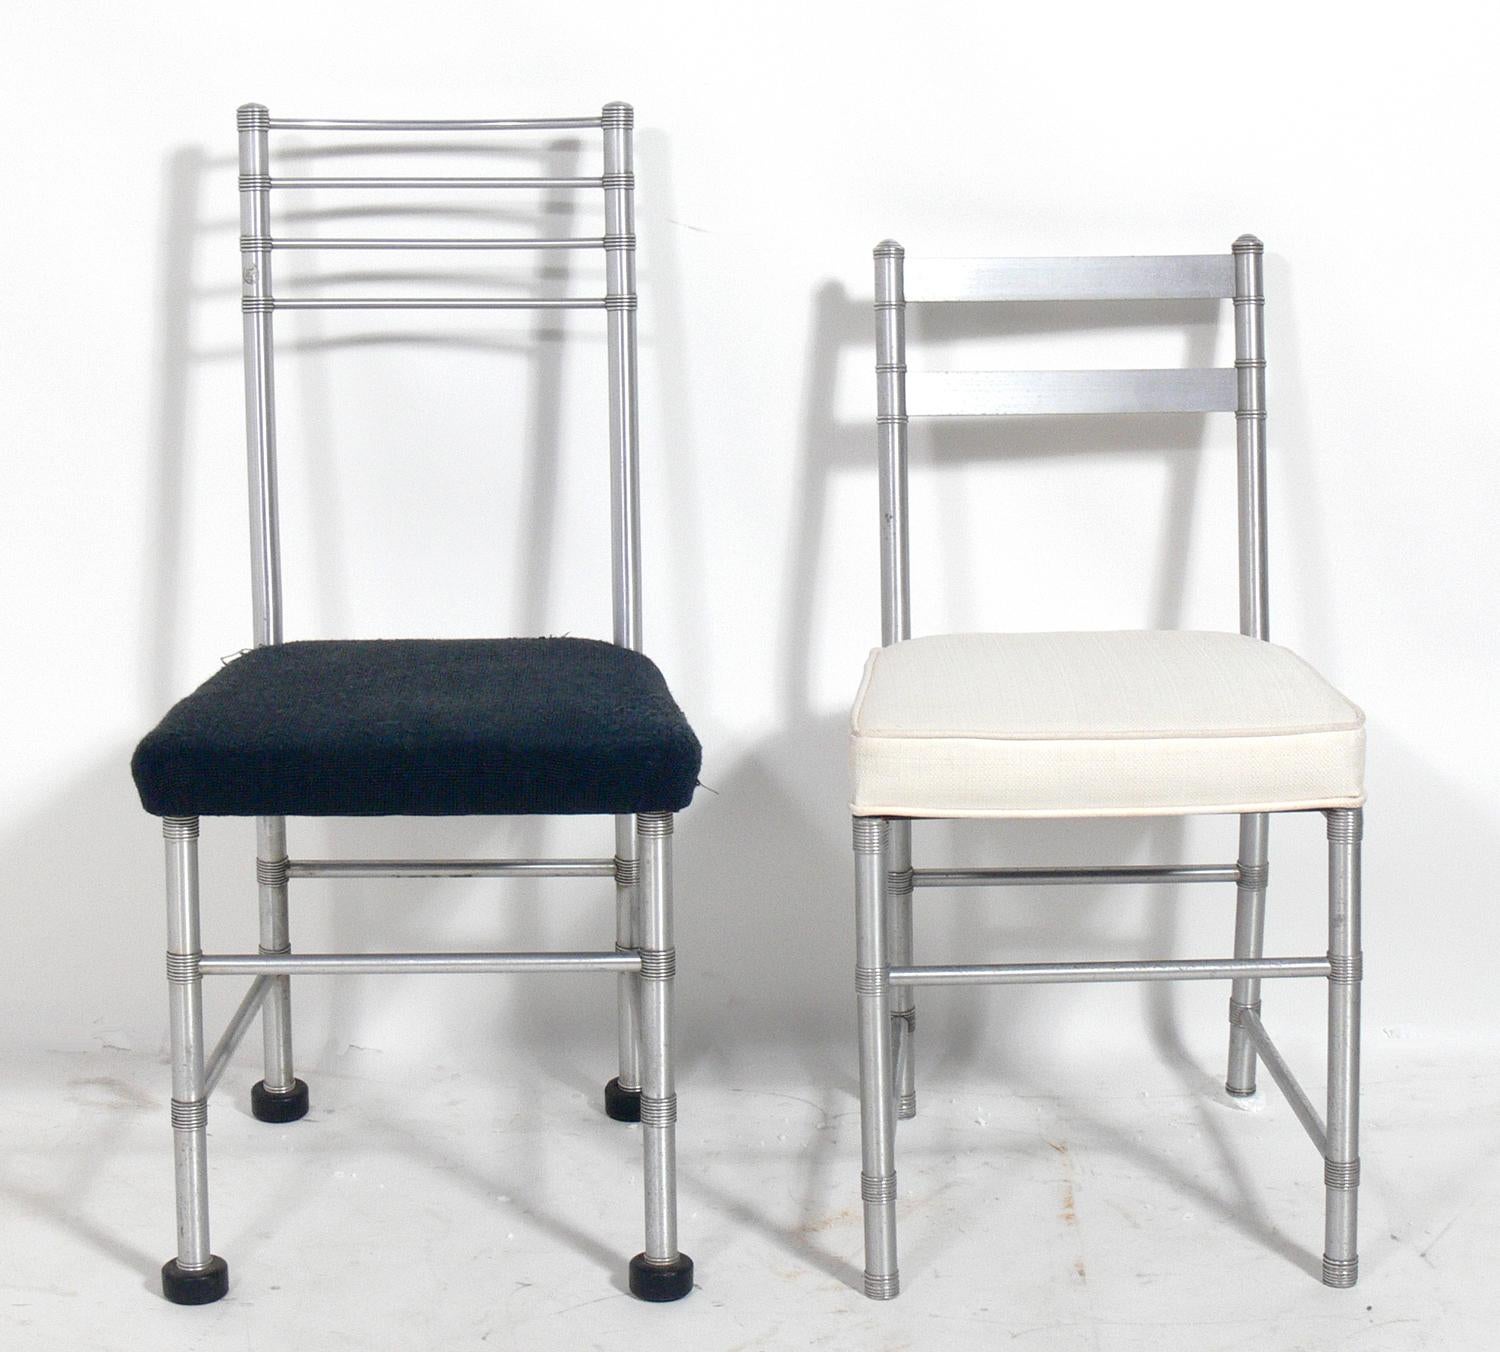 Eine Auswahl von Art-Déco-Stühlen aus Aluminium, entworfen von Warren McArthur, Amerikaner, ca. 1930er Jahre. Die Stühle können als Esszimmer-, Tisch- oder Beistellstühle verwendet werden. Der Preis liegt bei 1500 Dollar pro Stück. Sie messen: 
1)